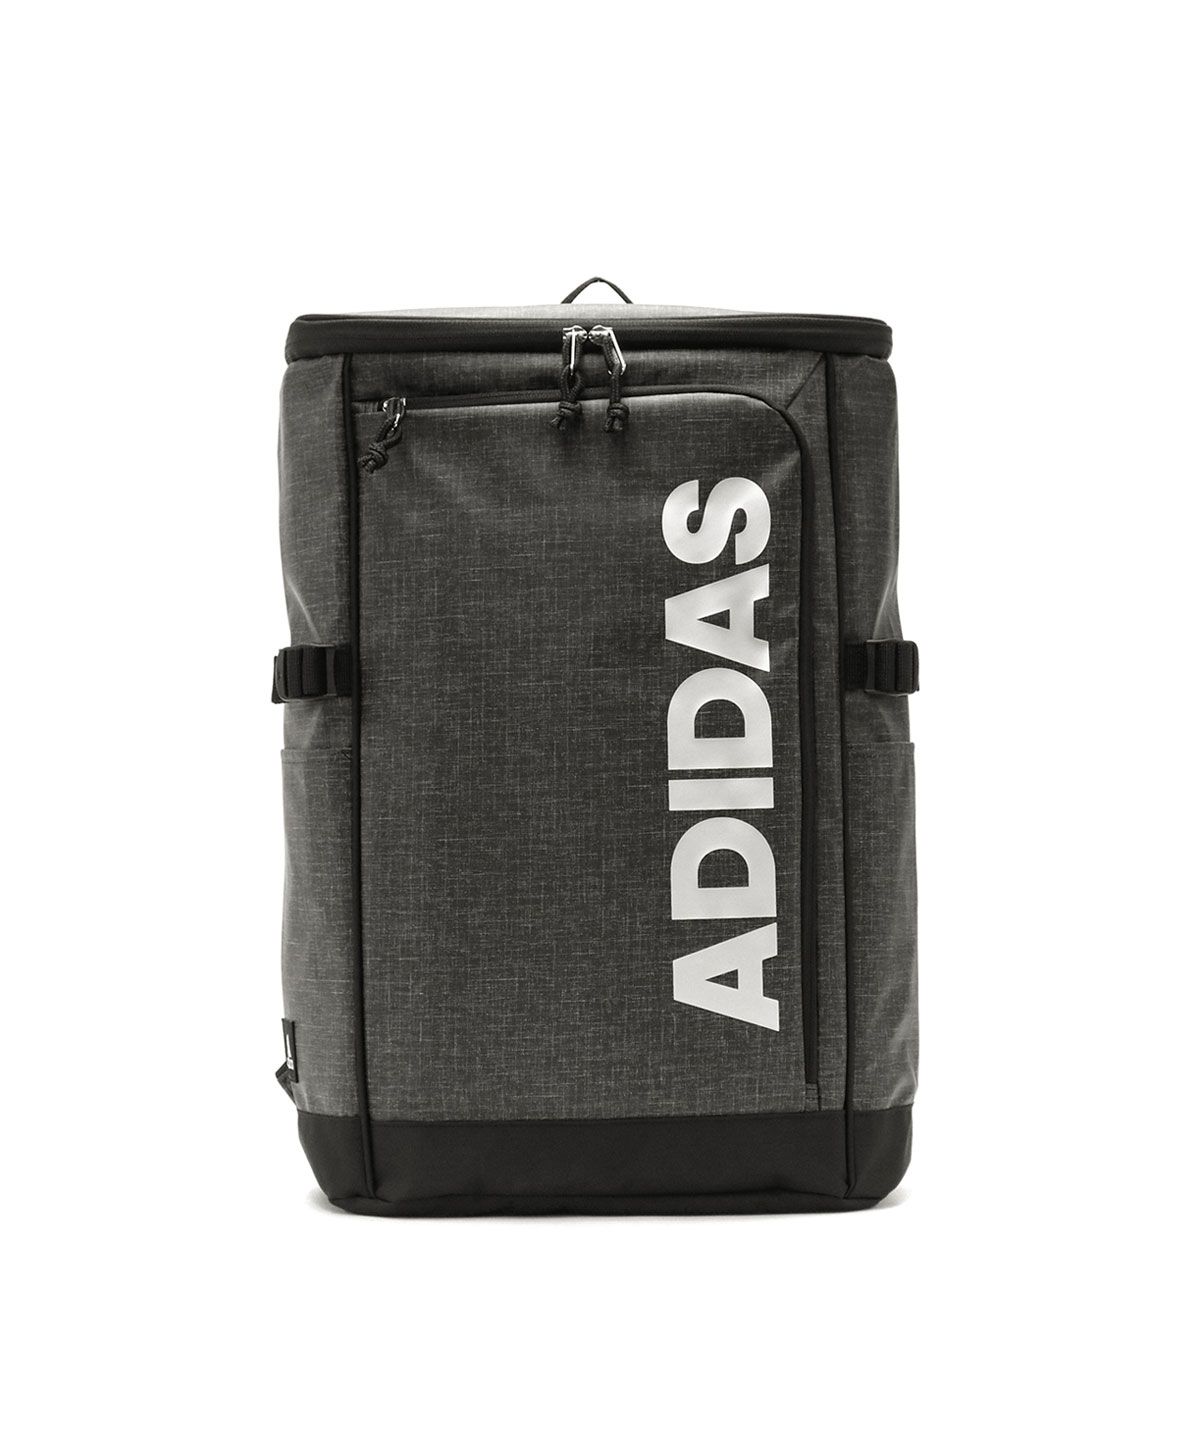 アディダス リュック adidas リュックサック 大容量 スクールバッグ